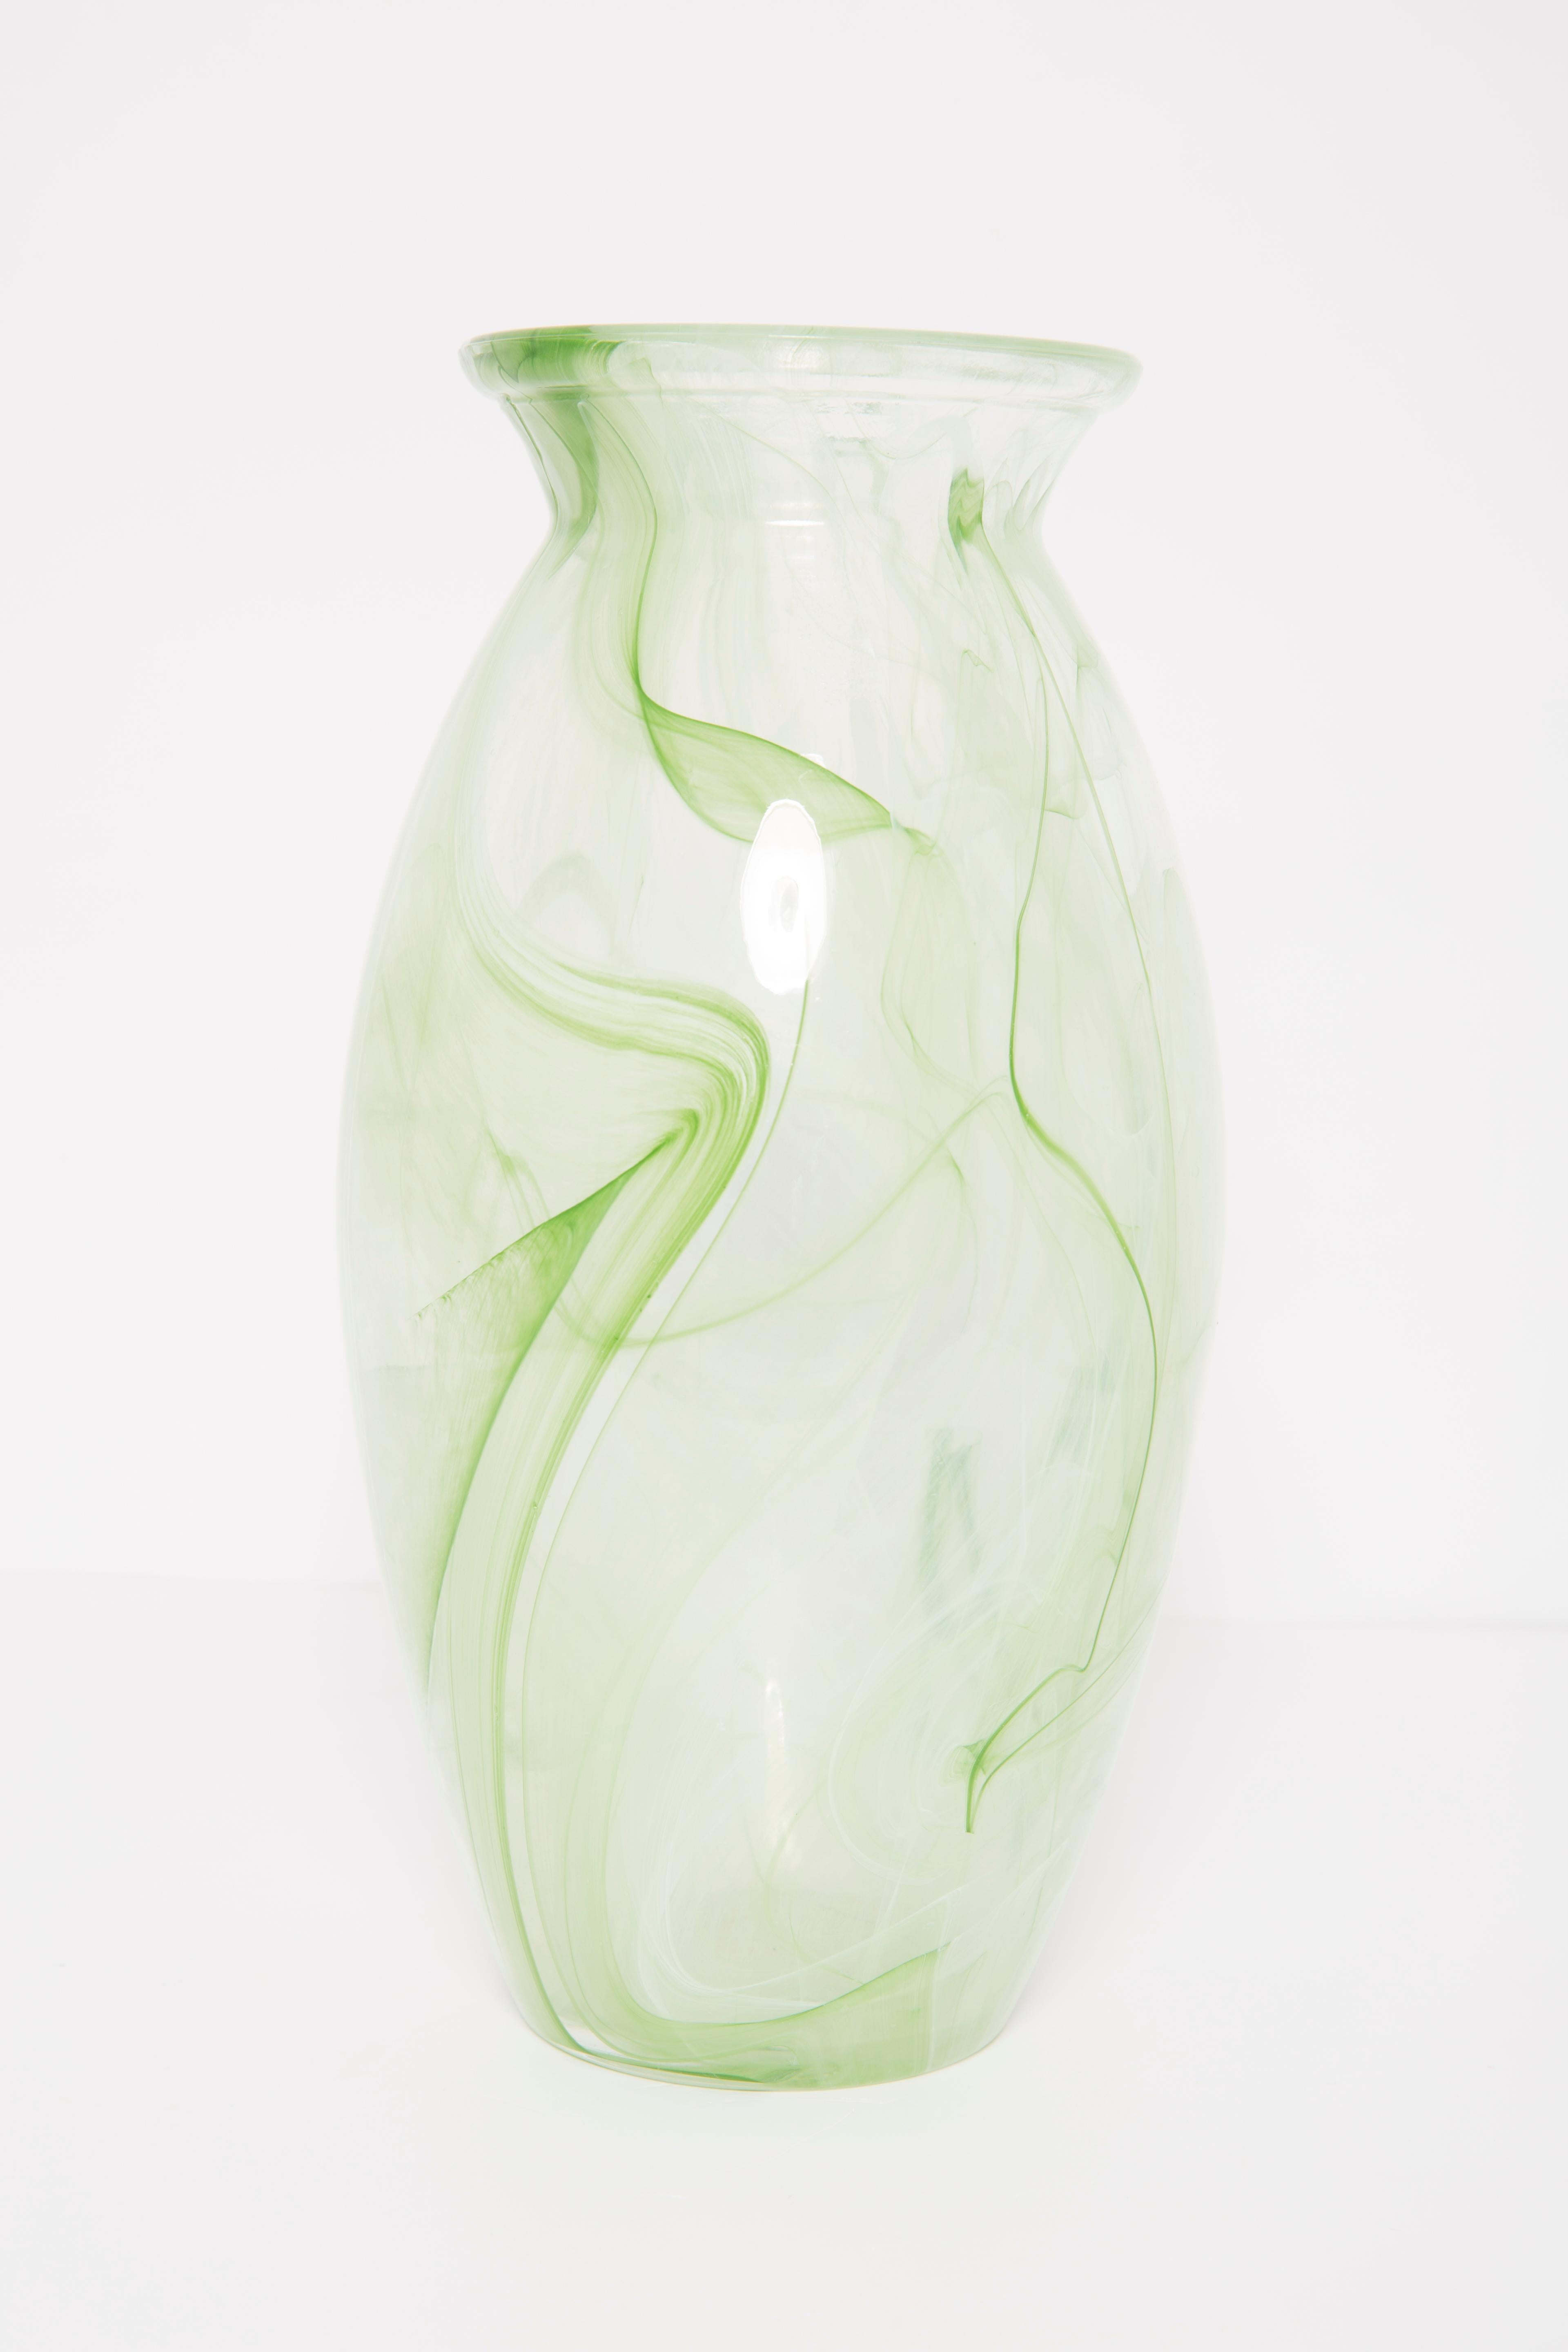 Vintage Glas in sehr gutem Zustand. Die Vase sieht aus, als wäre sie gerade erst aus der Schachtel genommen worden. Keine Zacken, Mängel etc. Nur ein einziges Stück. Murano-Glas.



 